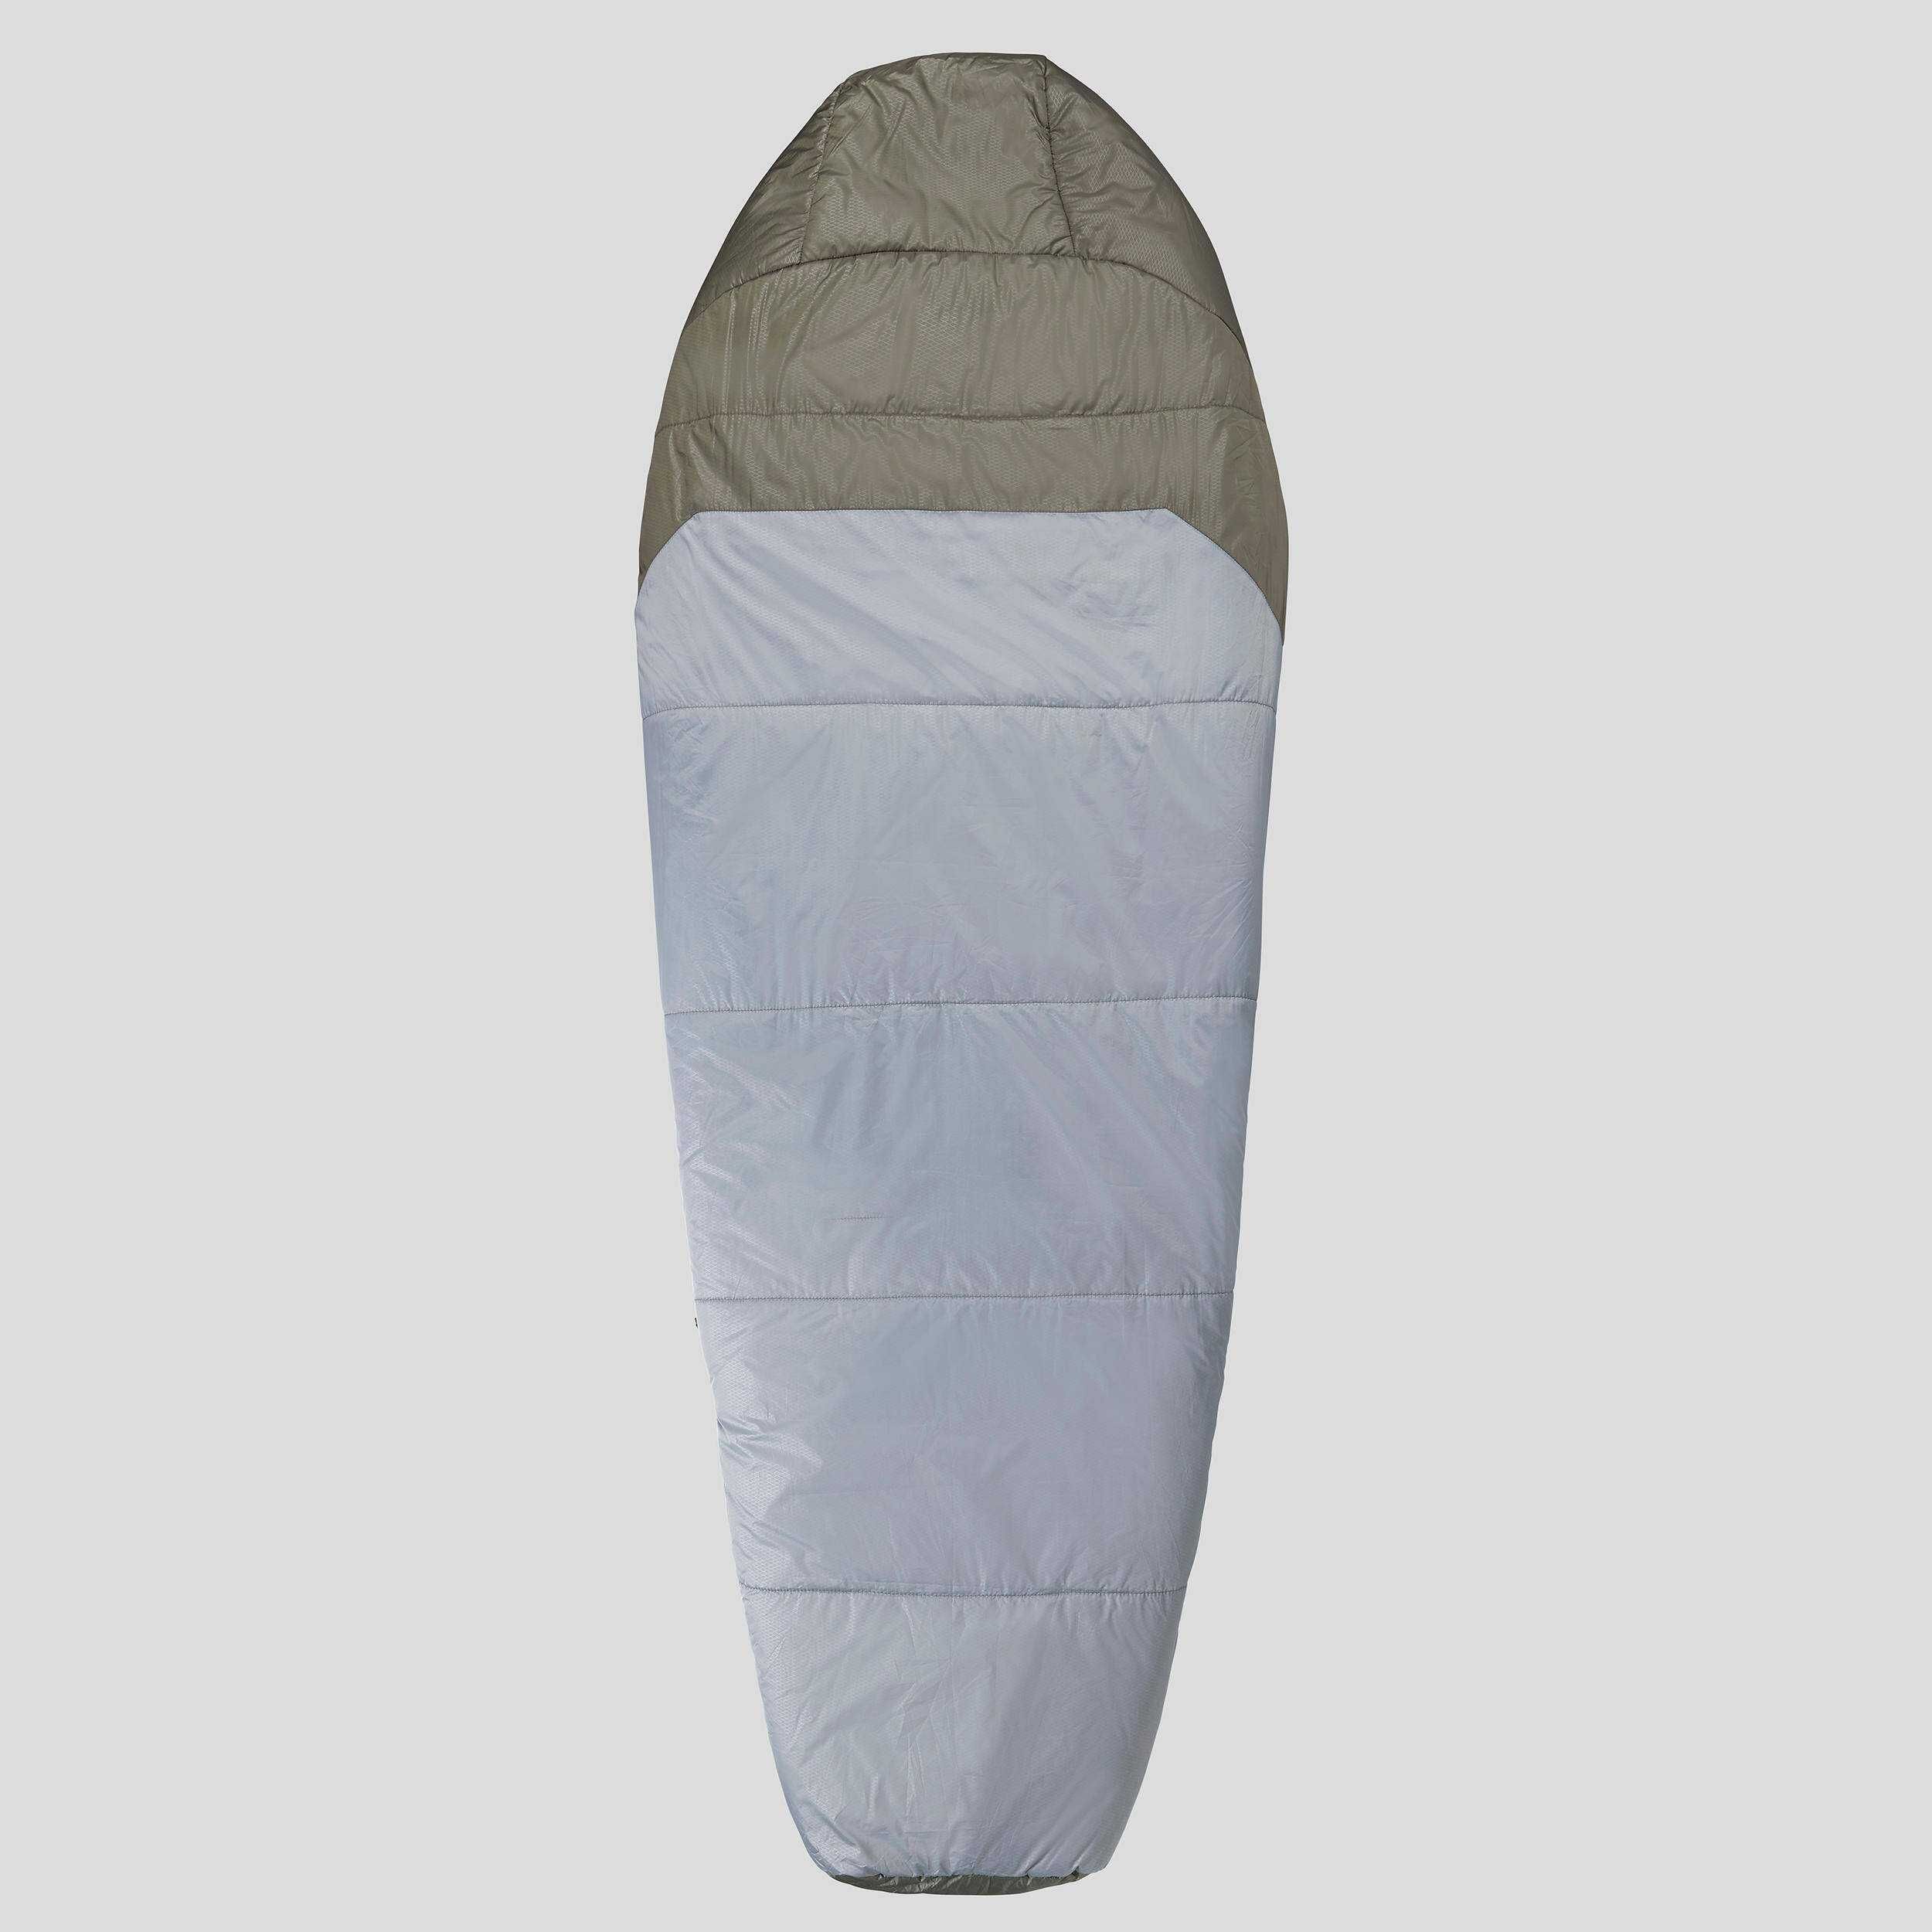 Спальный мешок для треккинга из полиэстера - MT500 0°C,размер XL